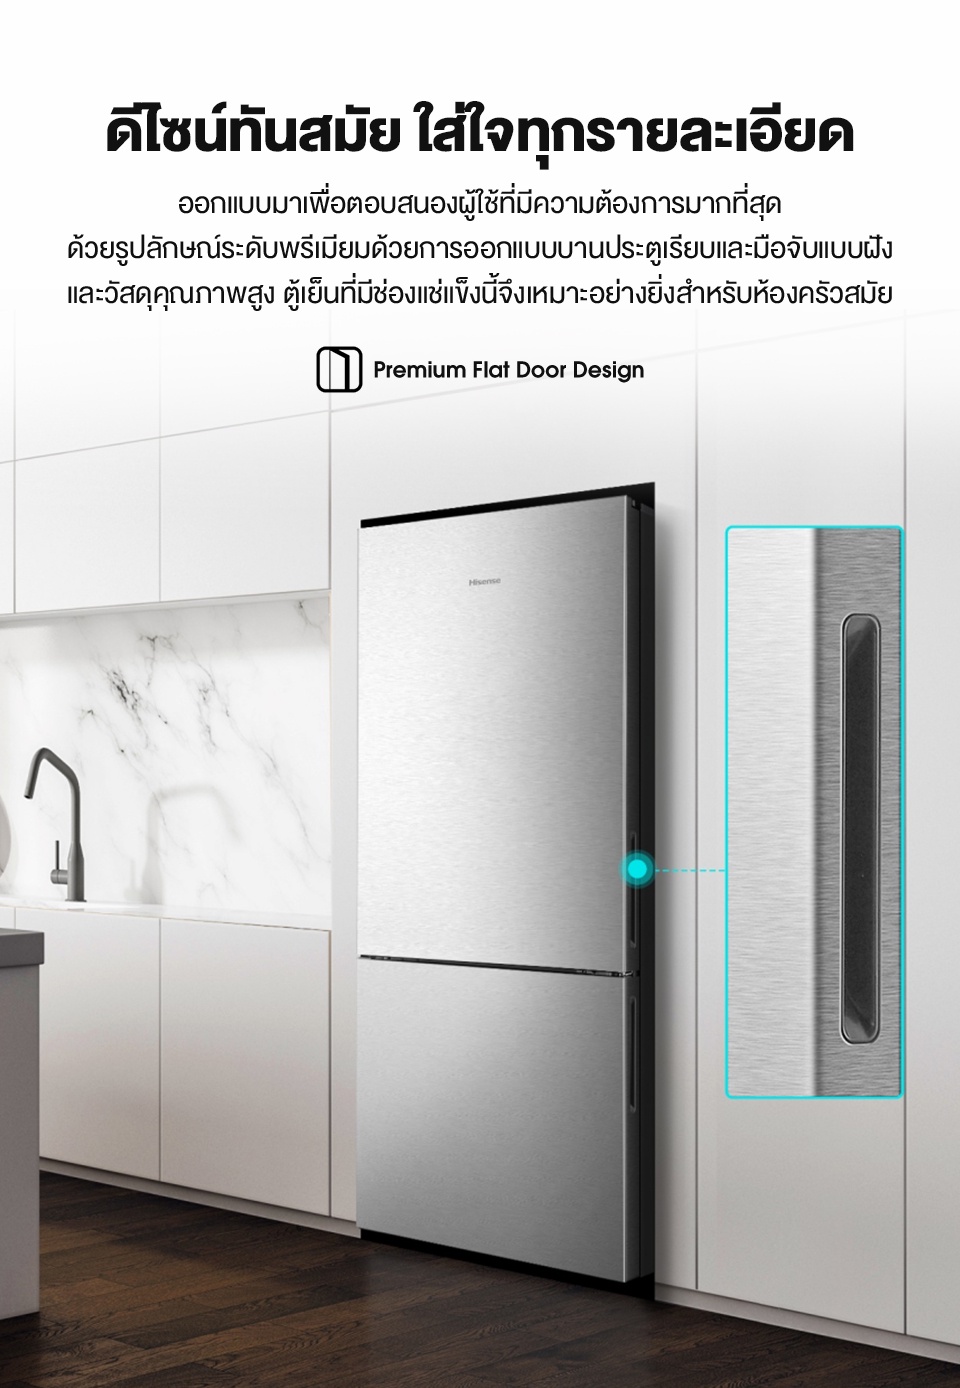 รูปภาพของ Hisense: ตู้เย็น 2 ประตู :14.7Q/417 ลิตร รุ่น RB556N4TGN